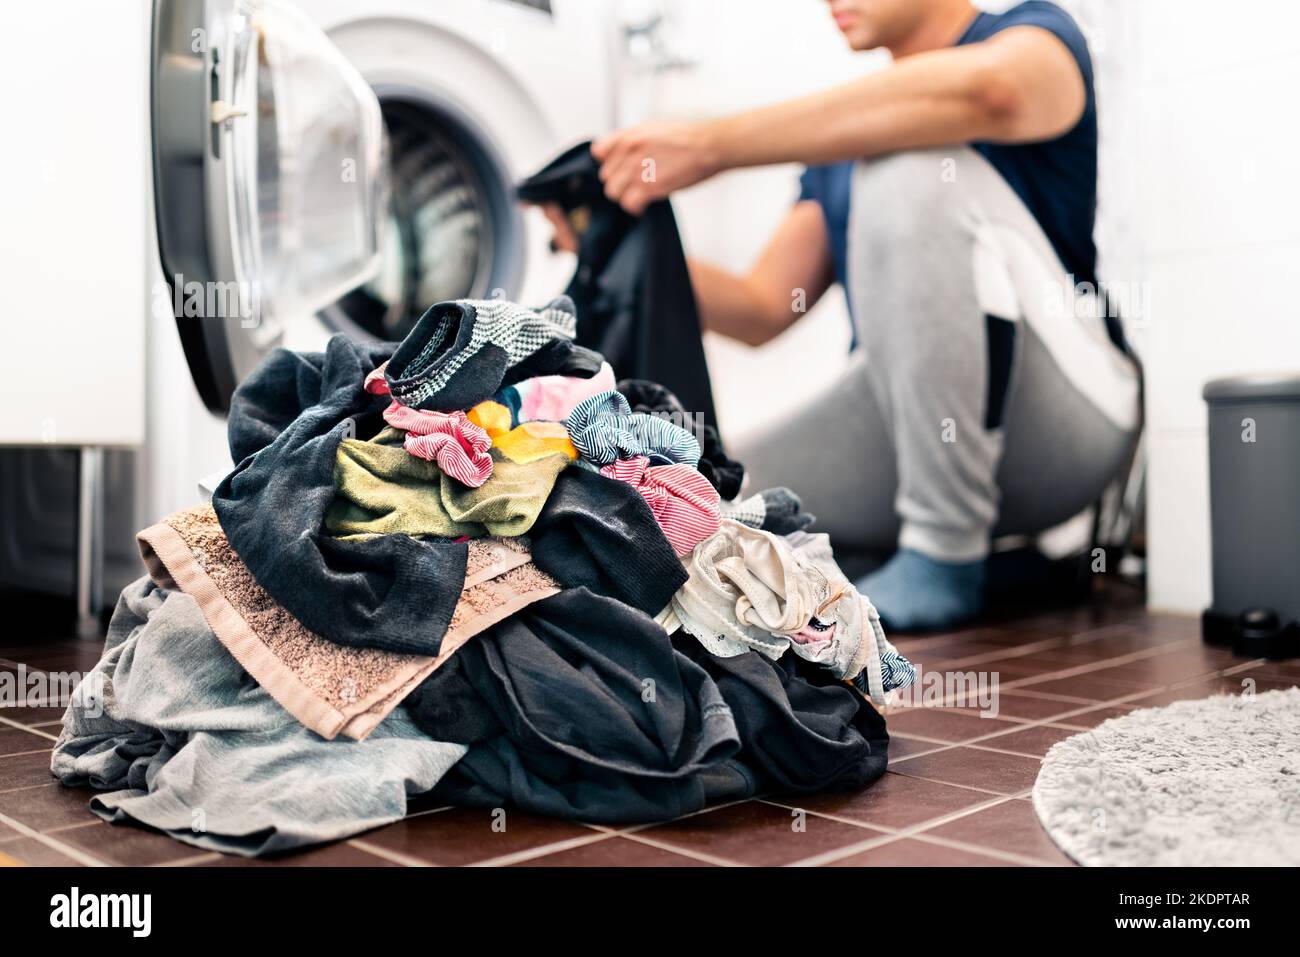 Blanchisserie, lavage des vêtements. Homme de chargement machine à laver et de tri par couleur et tissu. Homme au foyer faisant des tâches domestiques. Travail domestique en famille. Banque D'Images